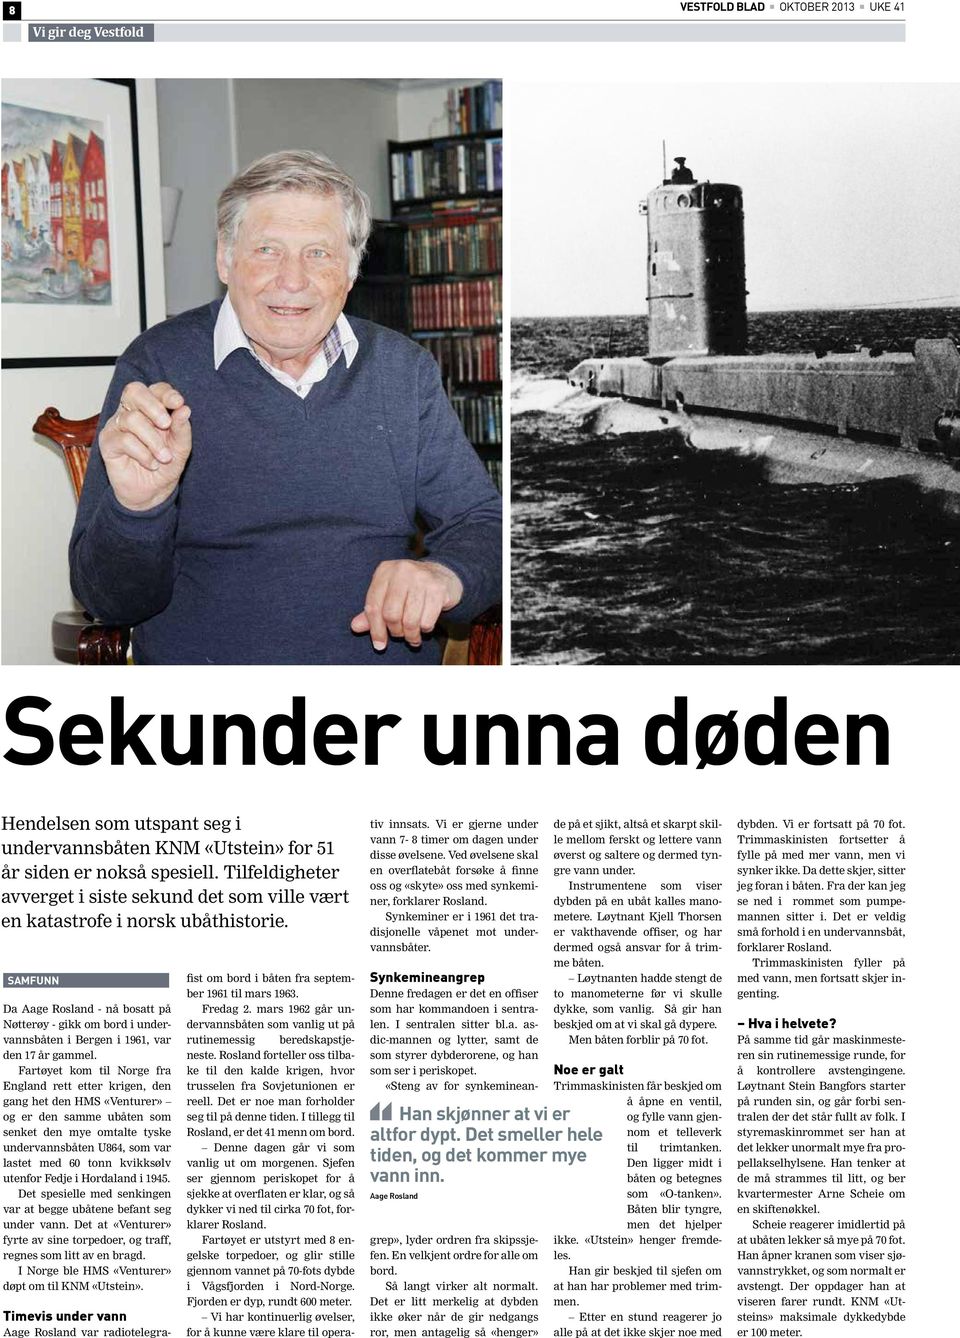 samfunn Da Aage Rosland - nå bosatt på Nøtterøy - gikk om bord i undervannsbåten i Bergen i 1961, var den 17 år gammel.